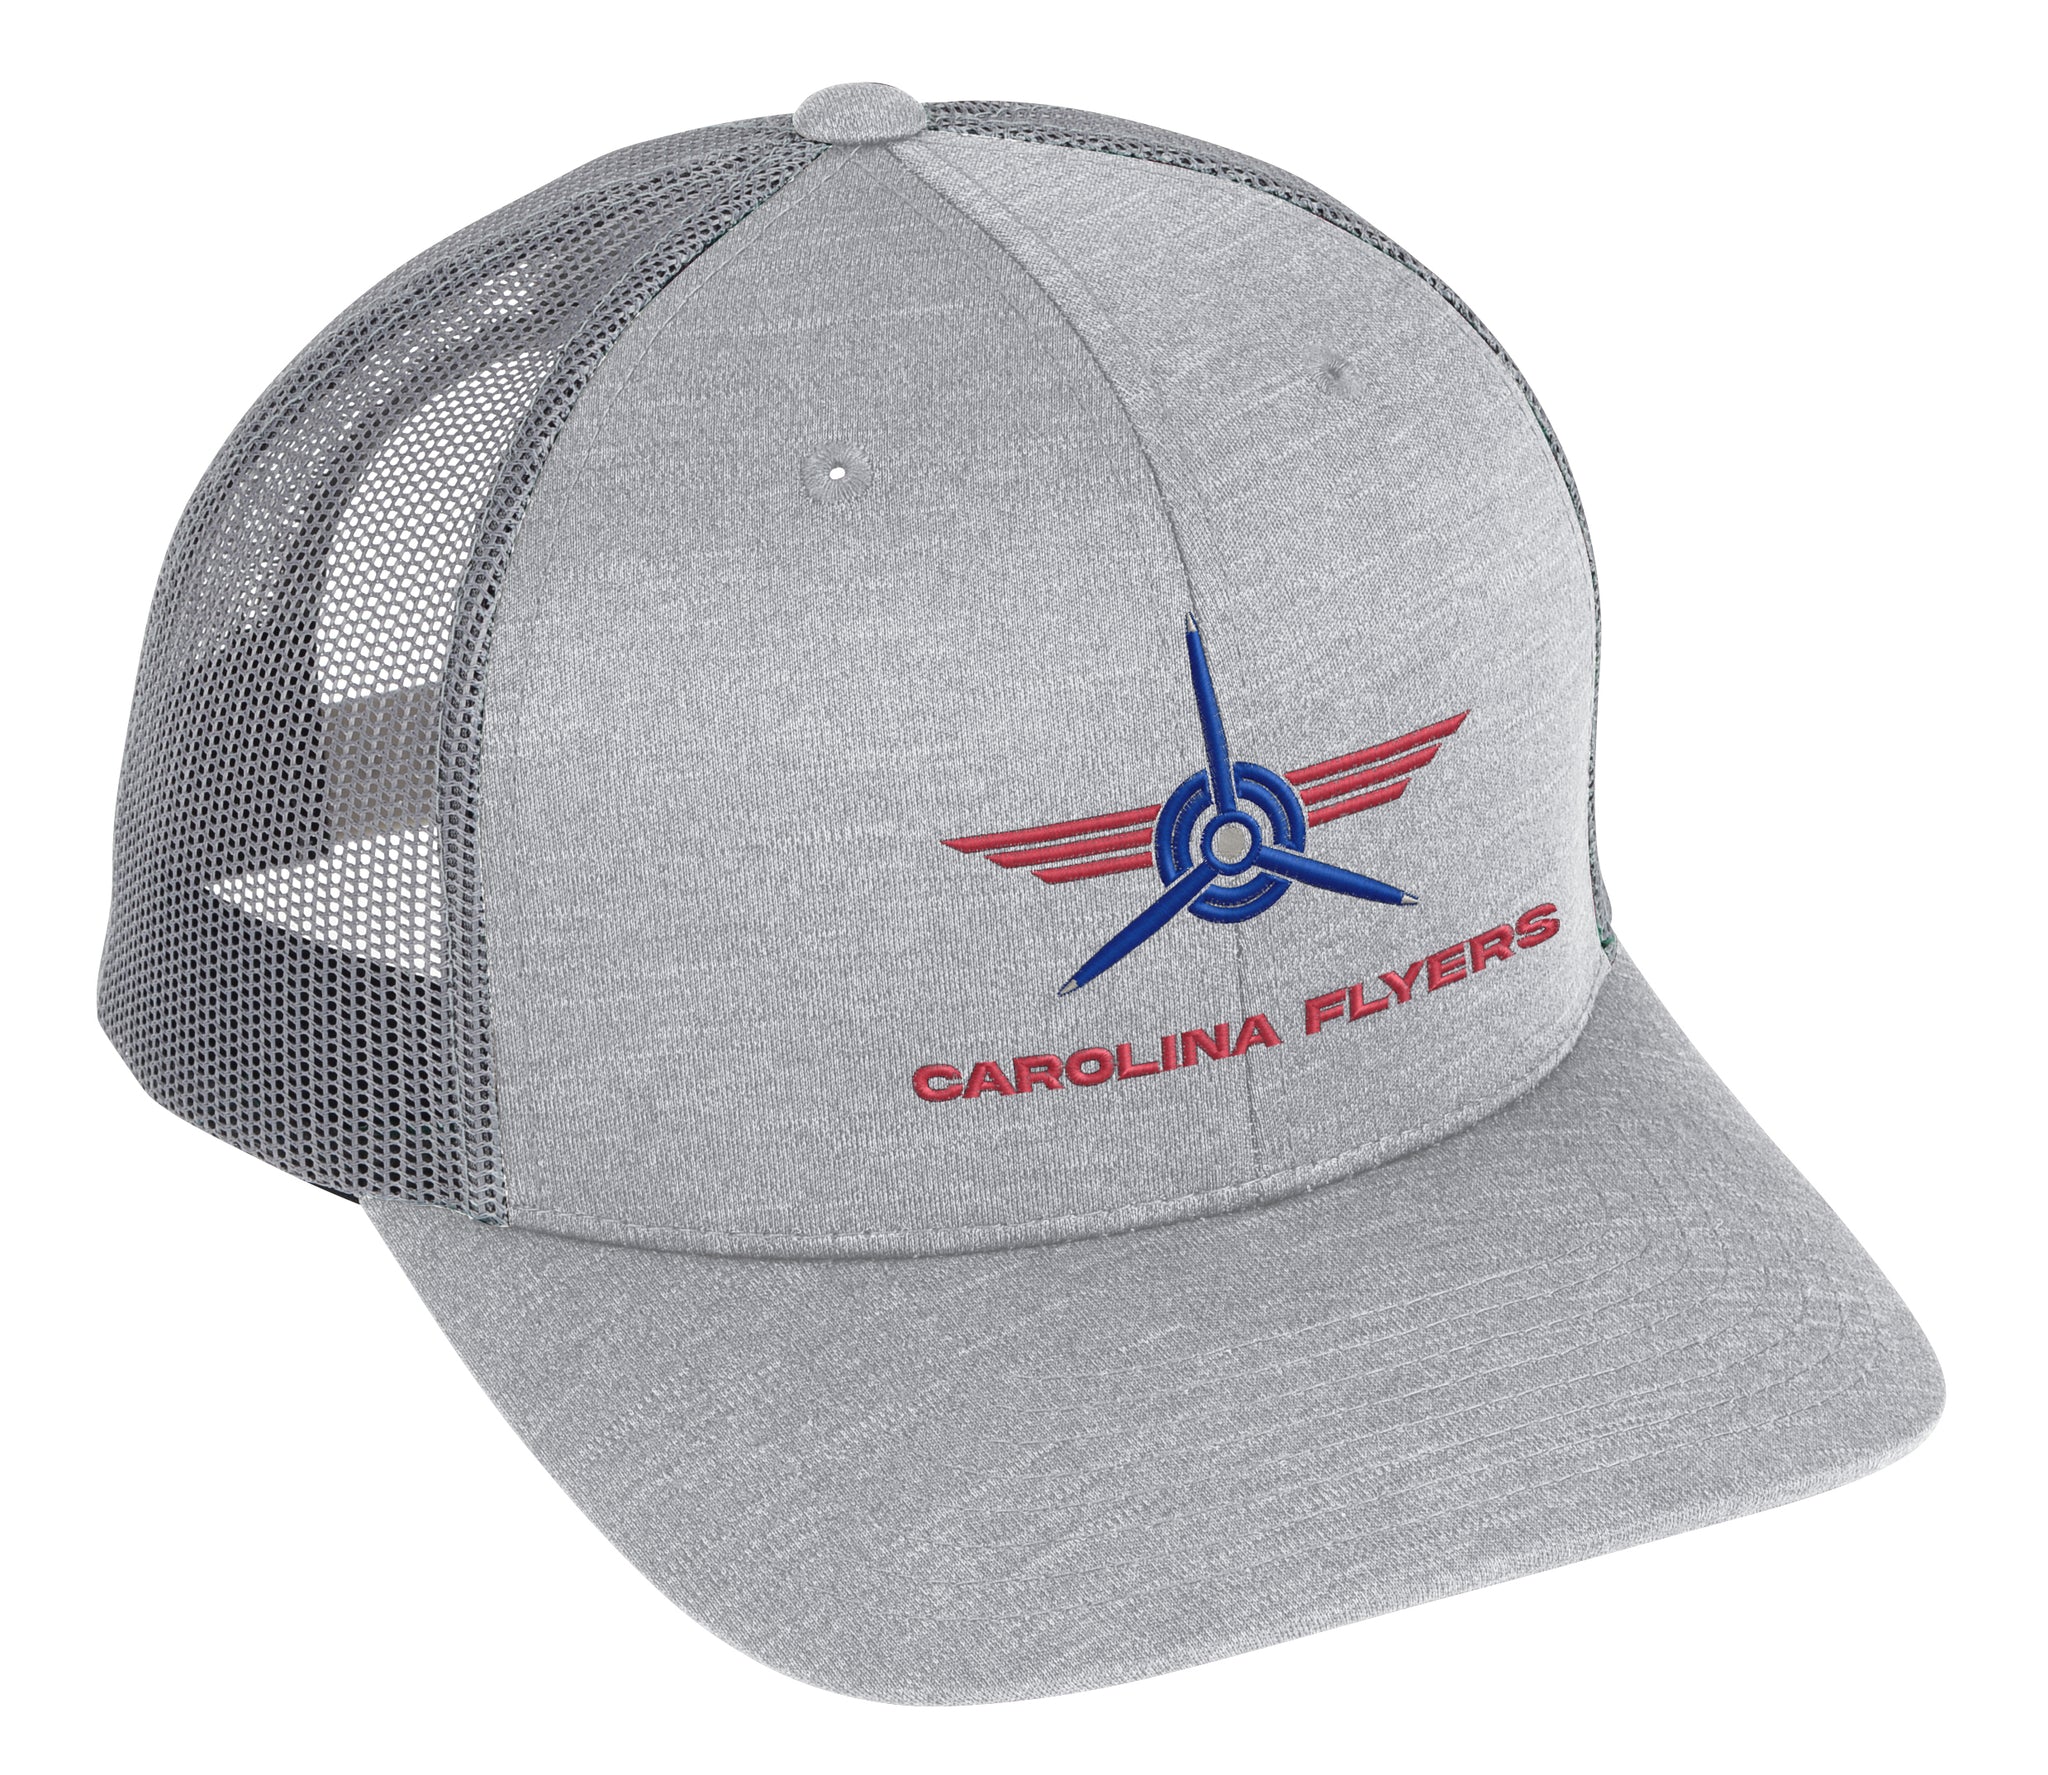 NEW Carolina Flyers Gray Trucker Hat